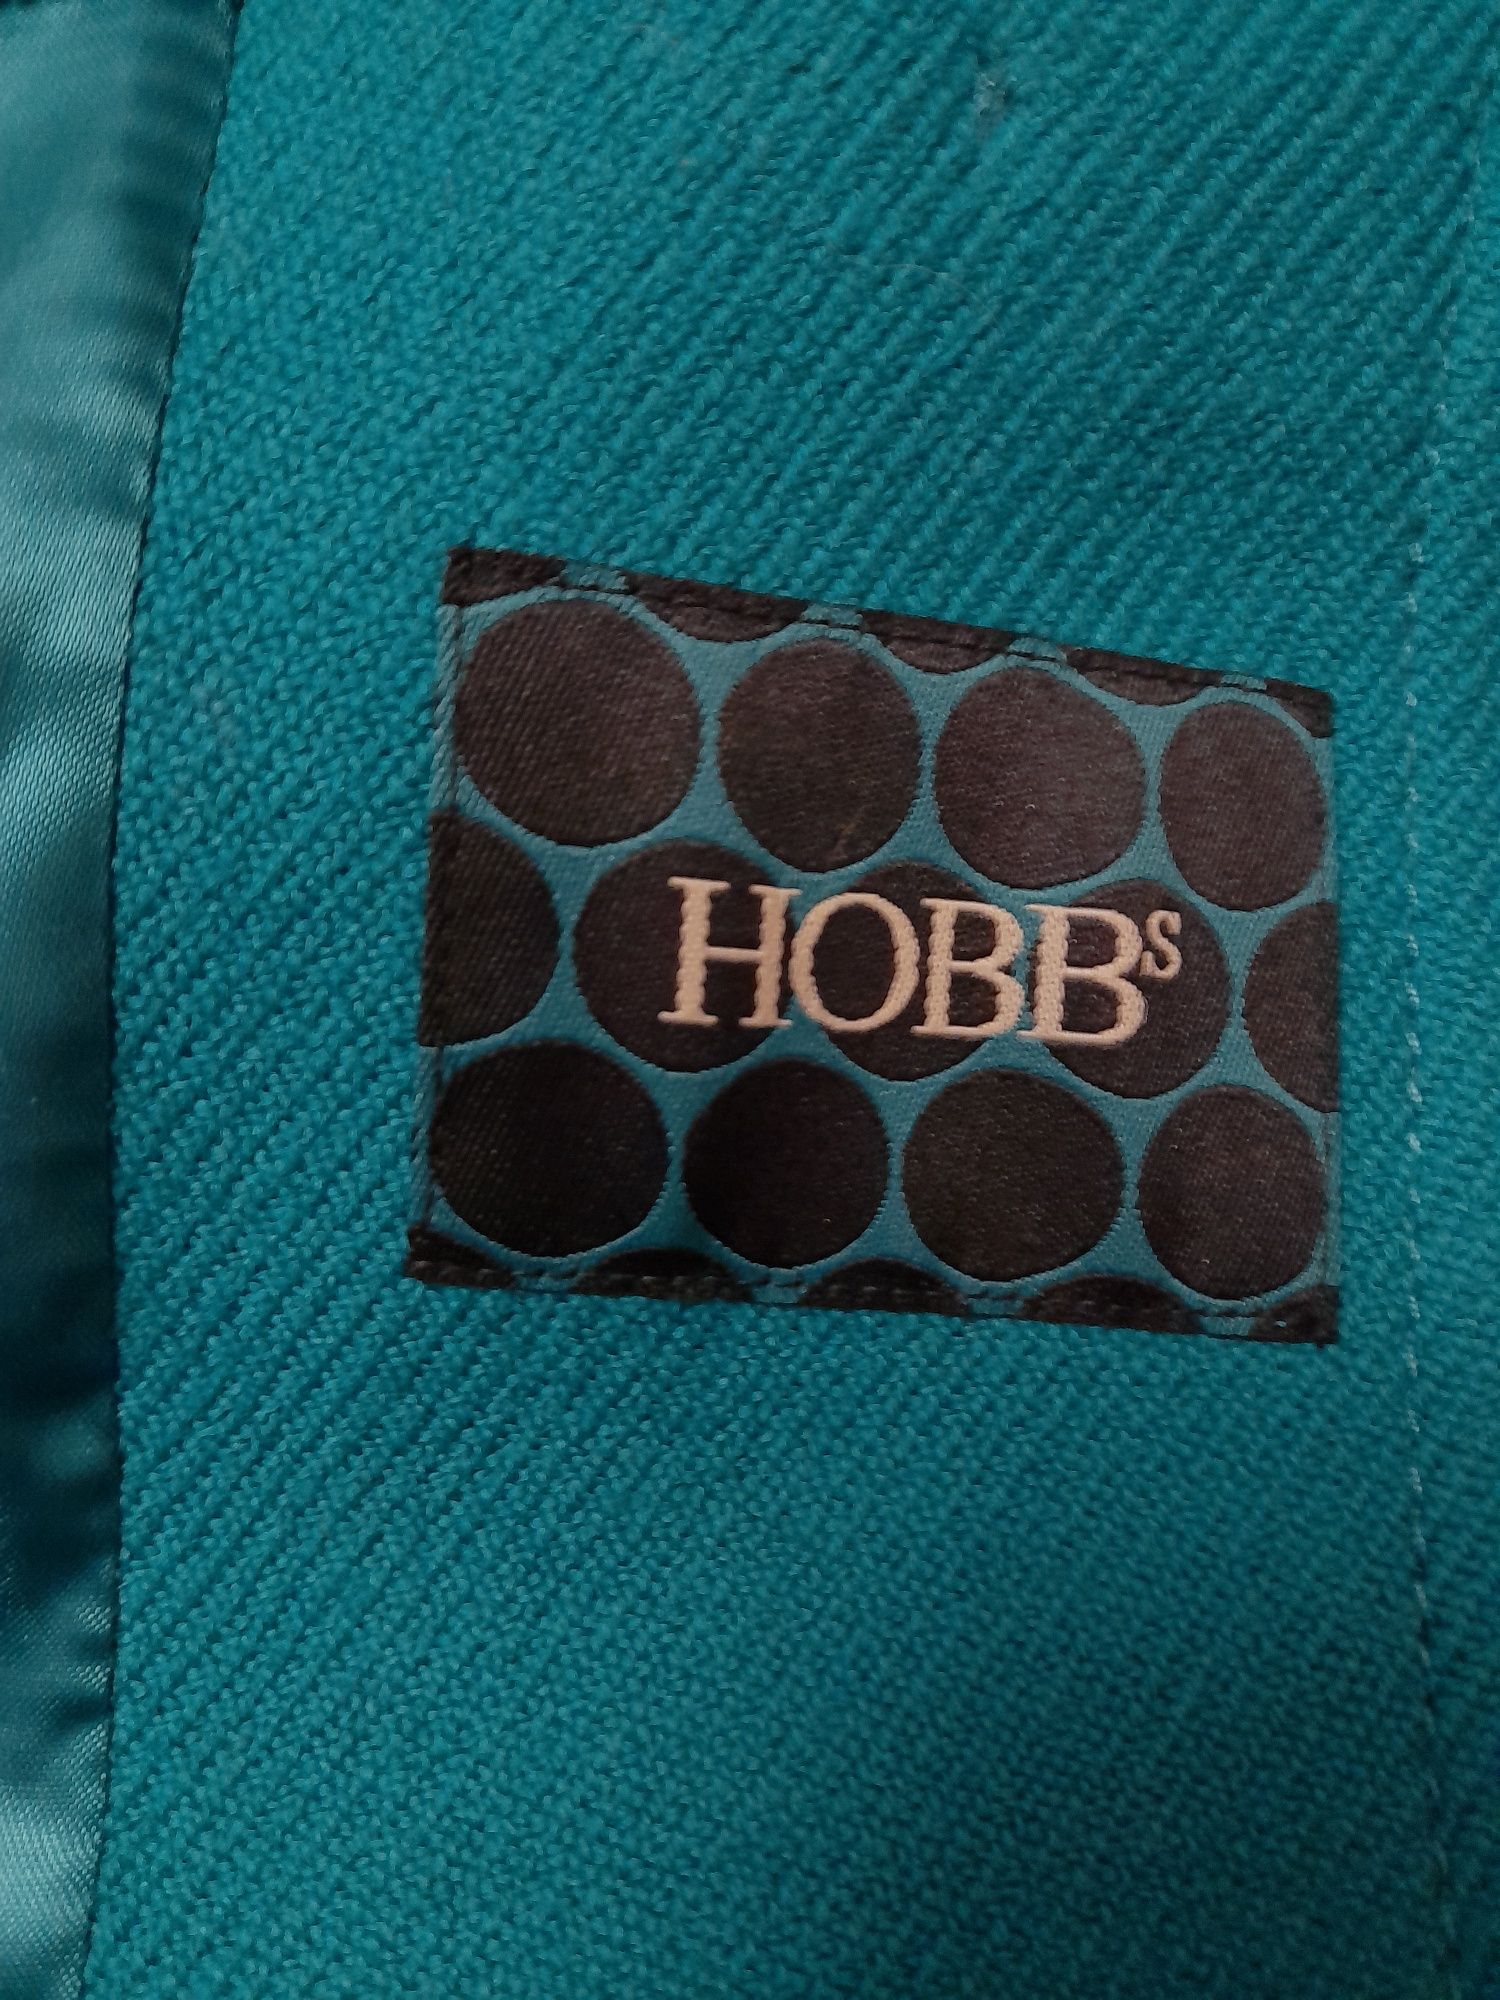 HOBBS wool 100 % шерстяной роскошный жакет как новый